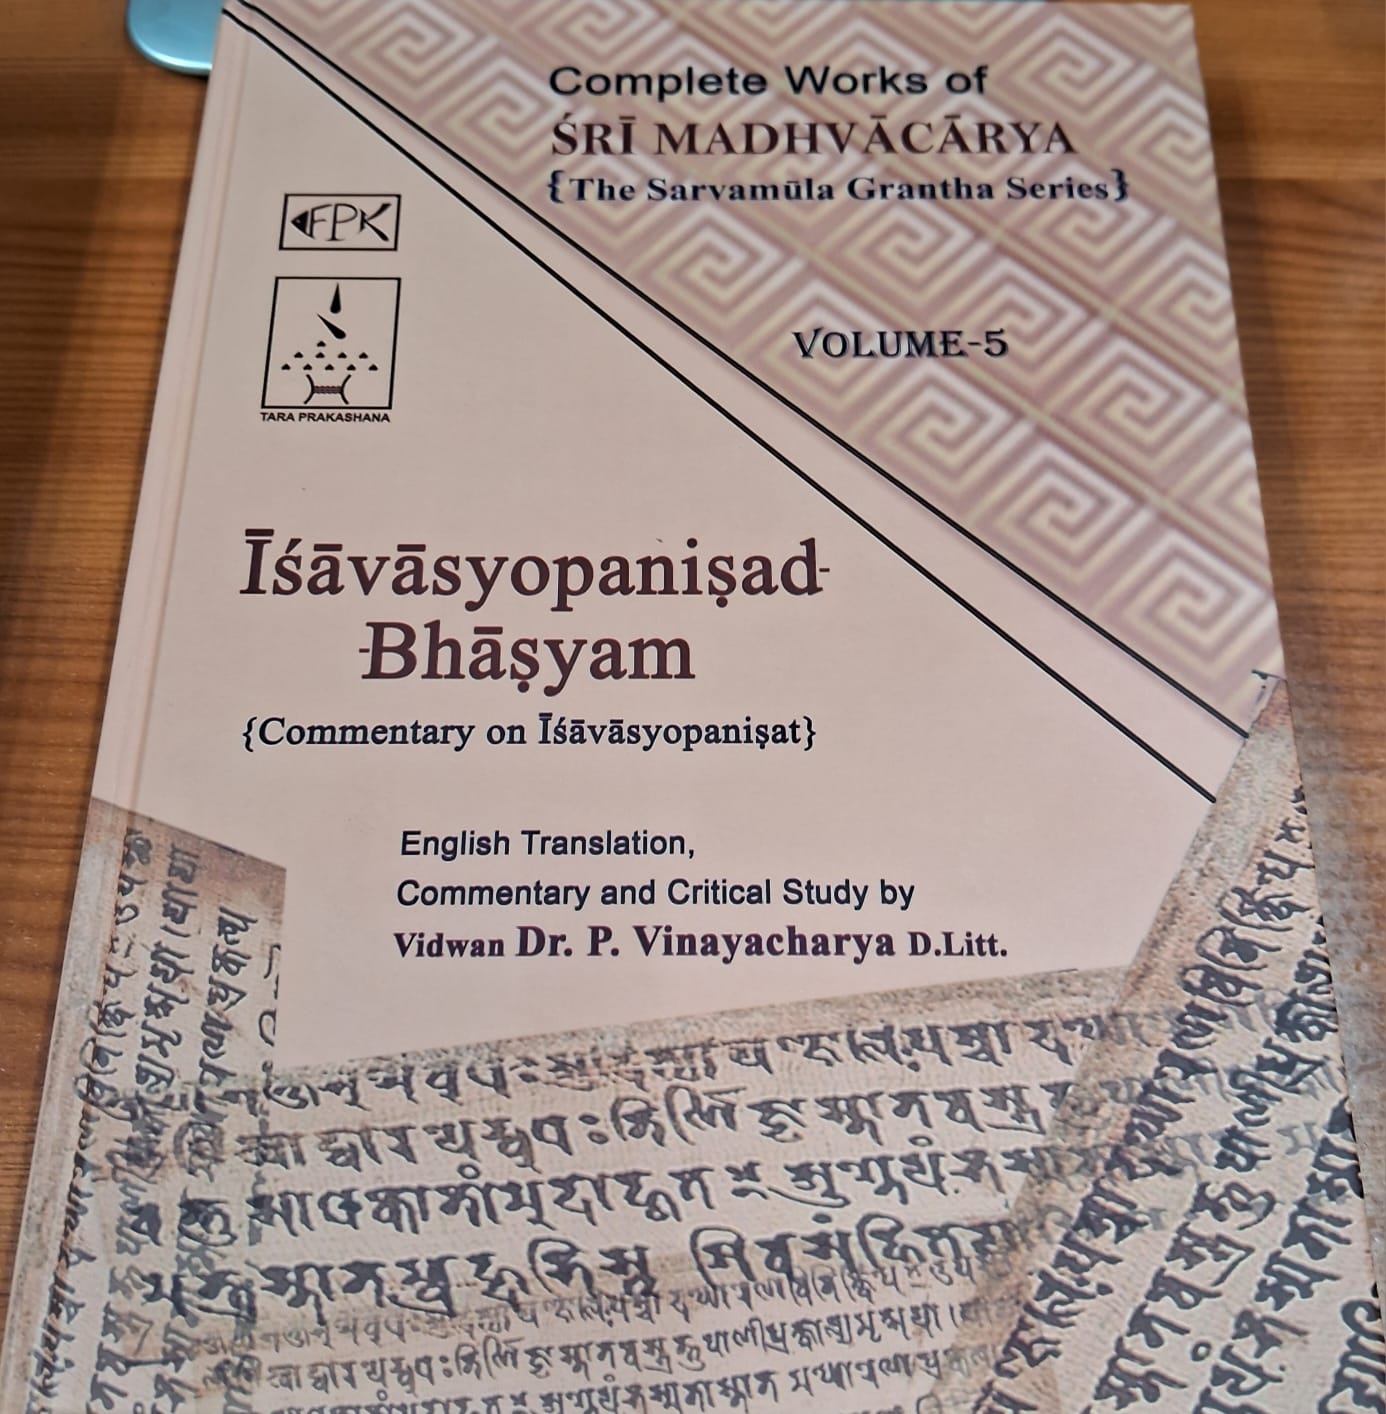 Complete Works of Sri Madhvacarya, Vo. 5, Isavasyopanisad Bhasyam